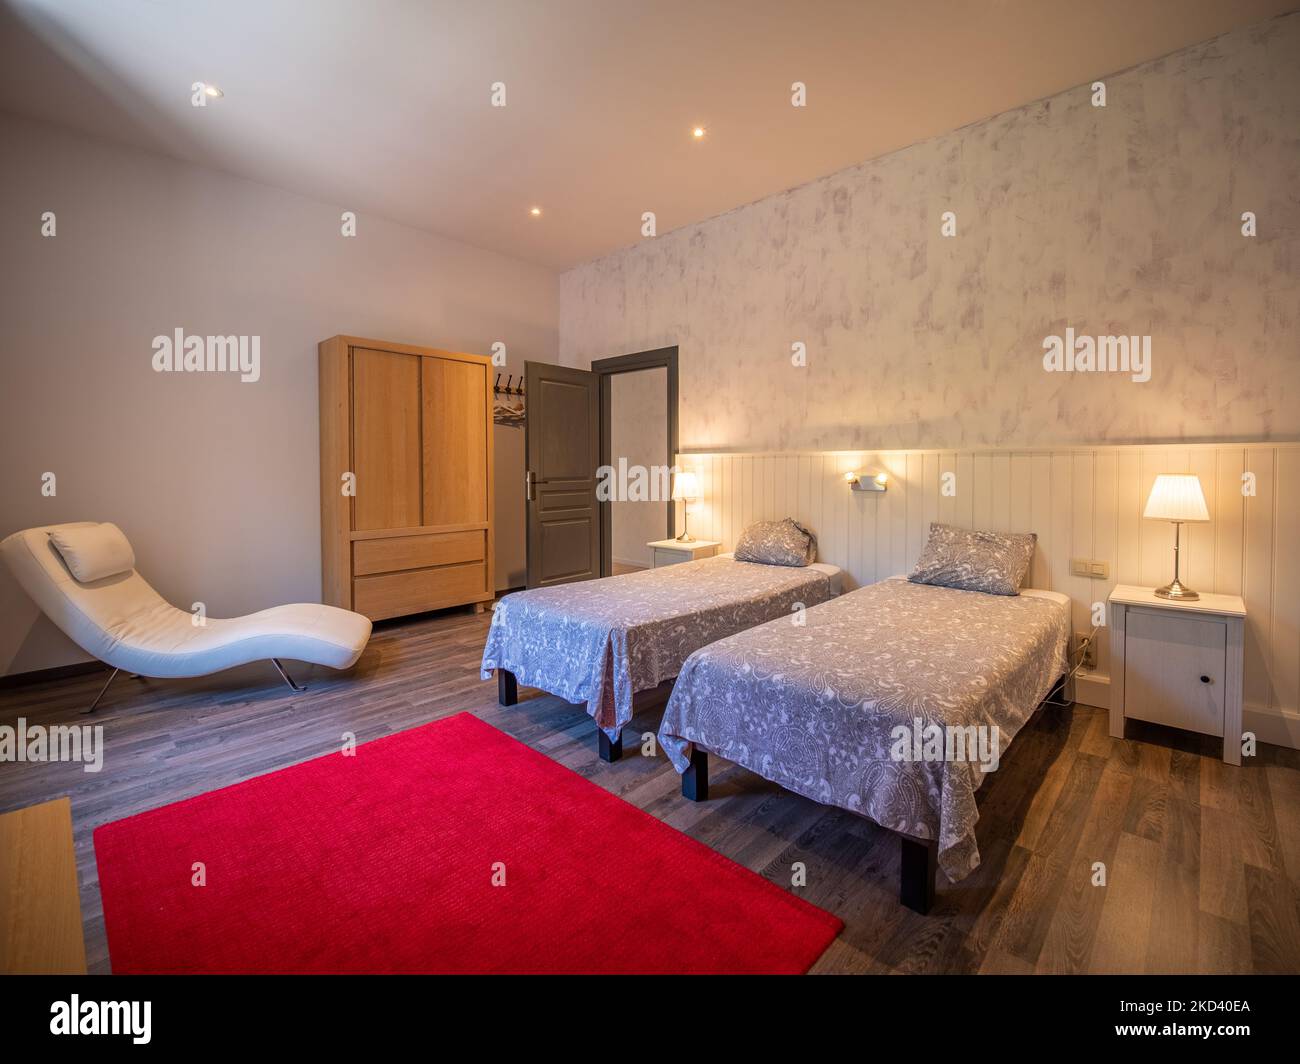 Une belle photo de chambre spacieuse avec deux lits simples, des murs clairs, du parquet, de la moquette rouge et un fauteuil Banque D'Images